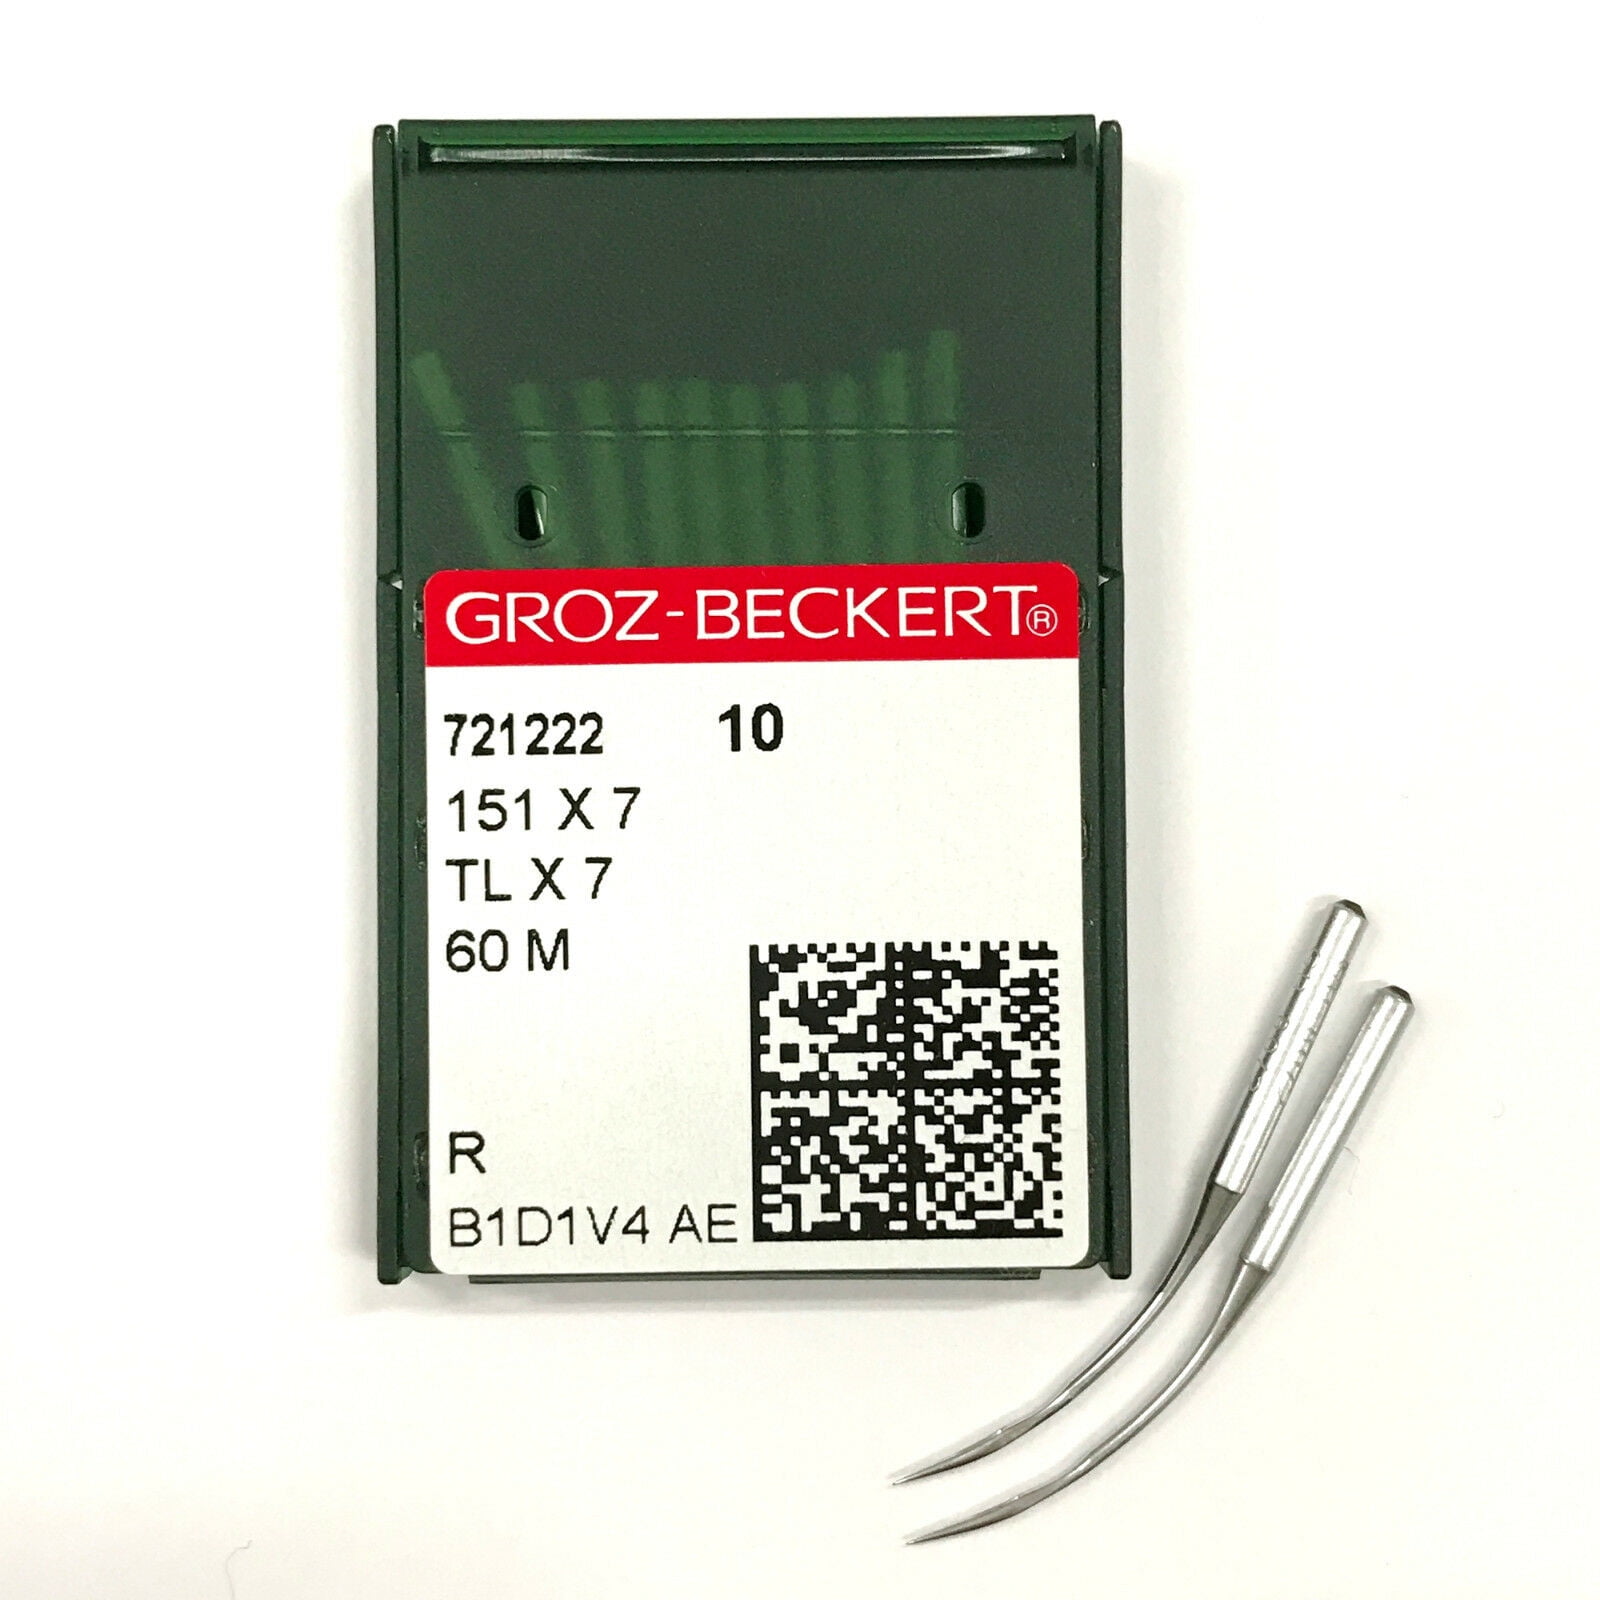 50 Groz-Beckert Sewing Needles 10,12,14,16,18  Assorted Sz B-27 Serger,Overlock 